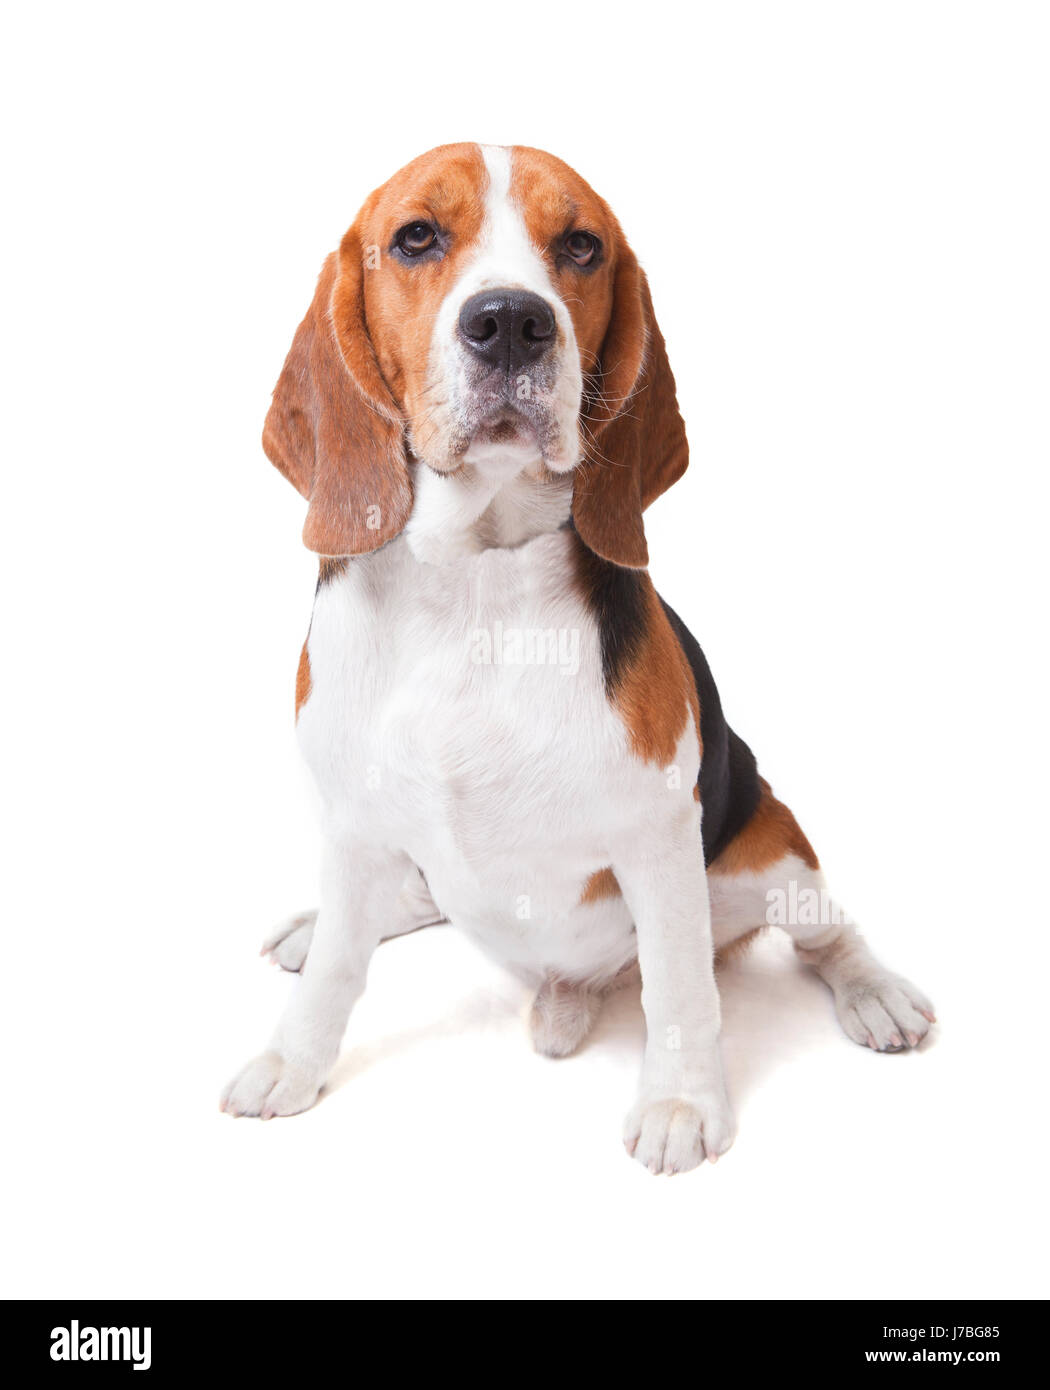 Visage de chien beagle sur fond blanc Banque D'Images